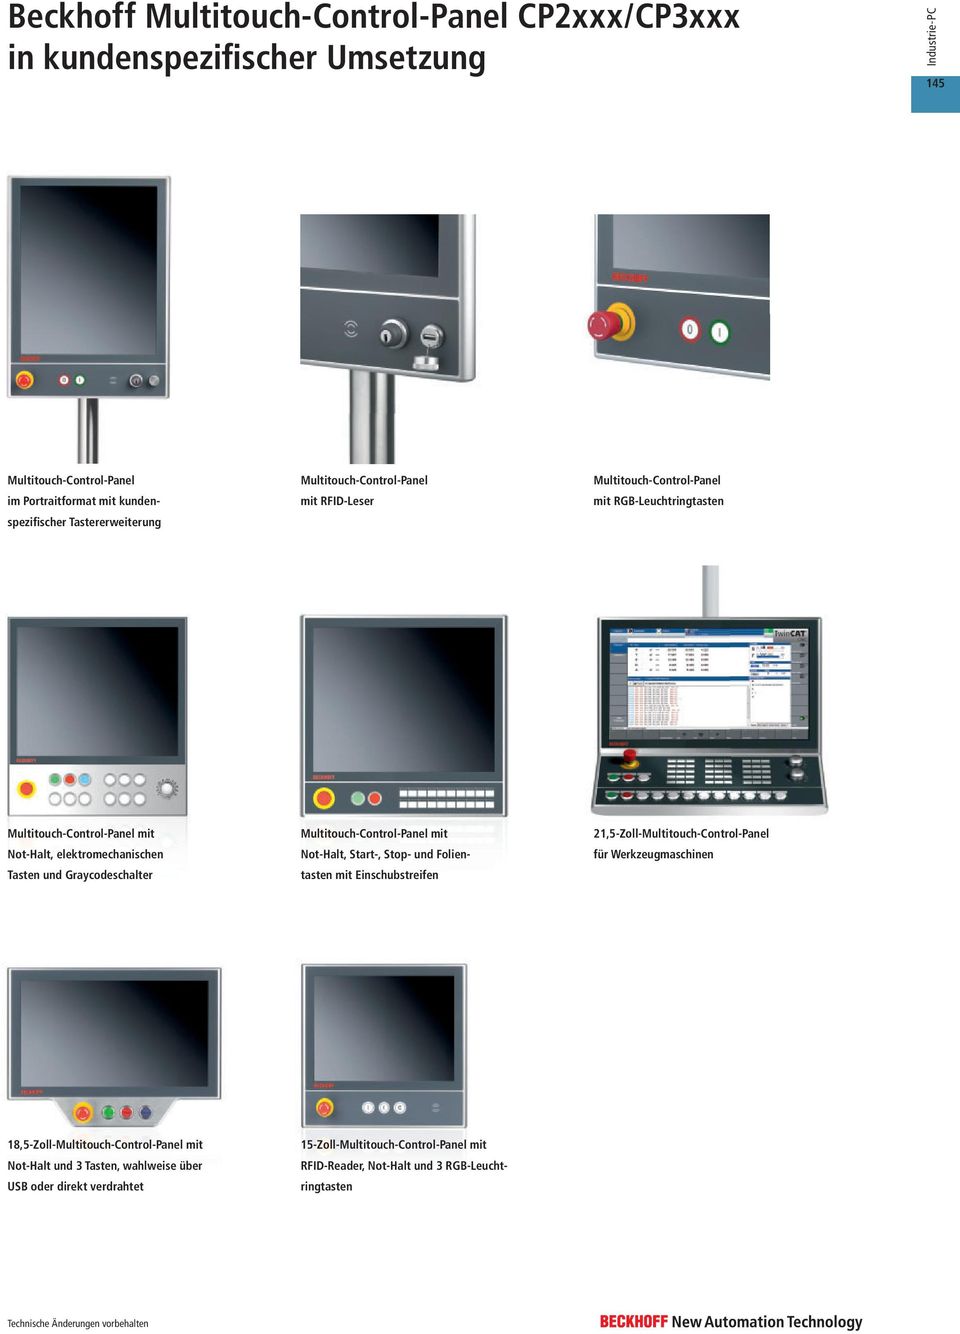 Graycodeschalter Multitouch-Control-Panel mit Not-Halt, Start-, Stop- und Folientasten mit Einschubstreifen 21,5-Zoll-Multitouch-Control-Panel für Werkzeugmaschinen